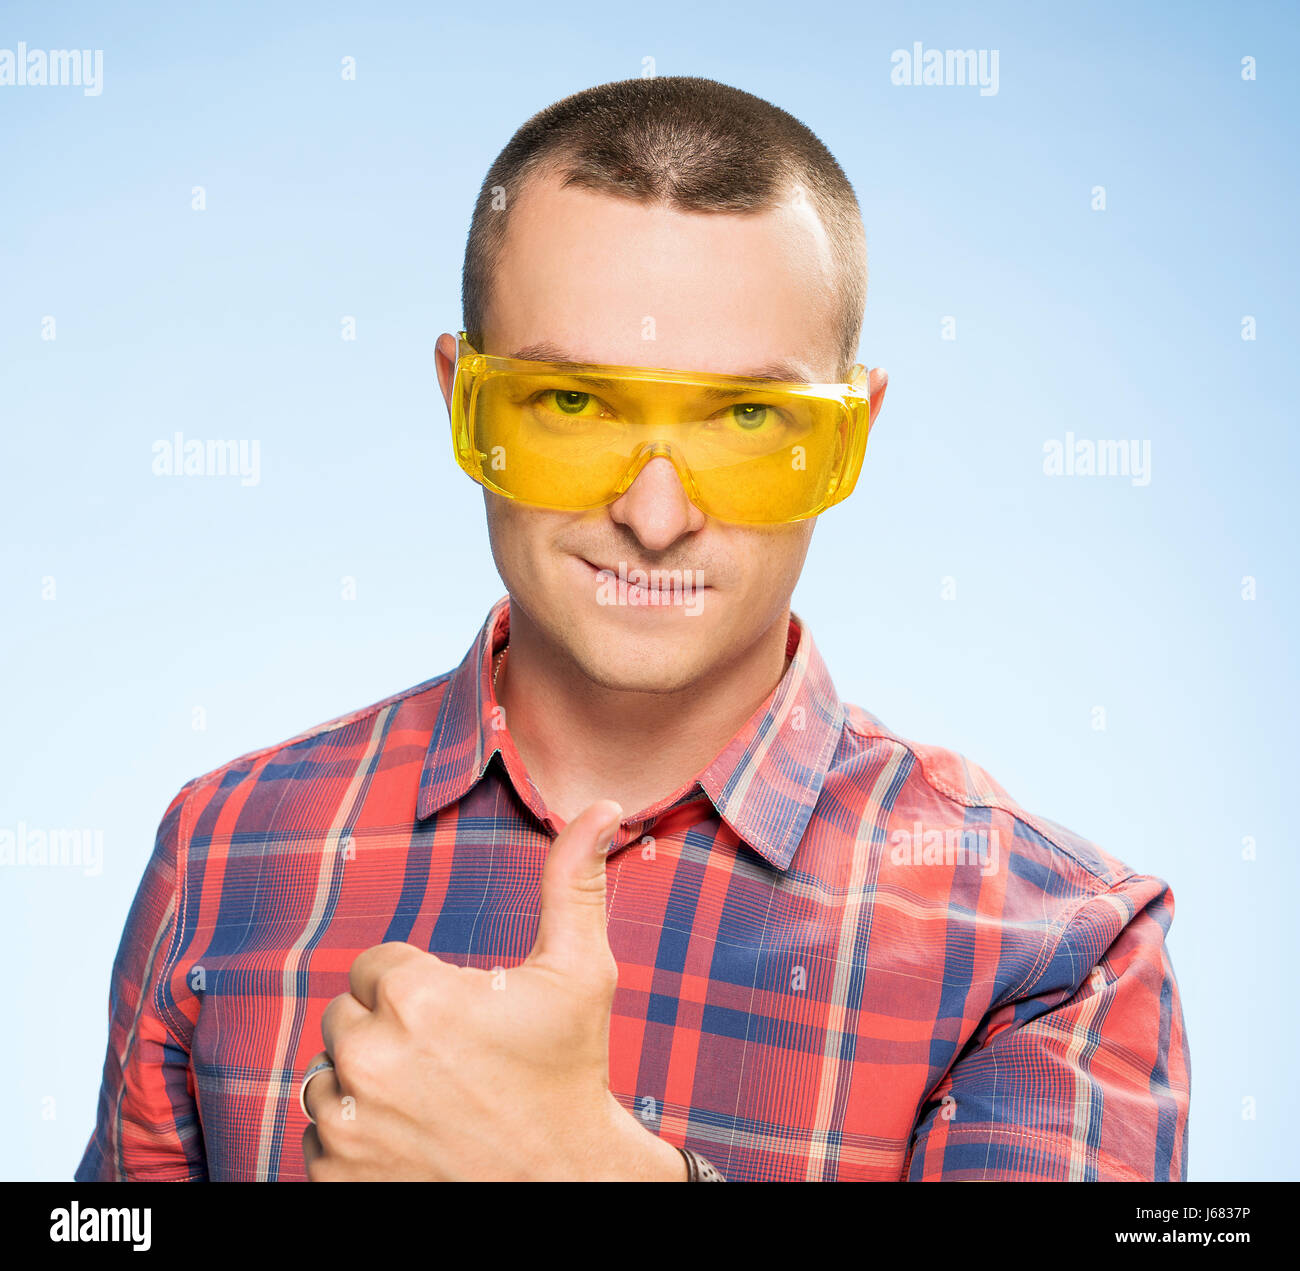 L'Homme à lunettes de protection jaune Banque D'Images